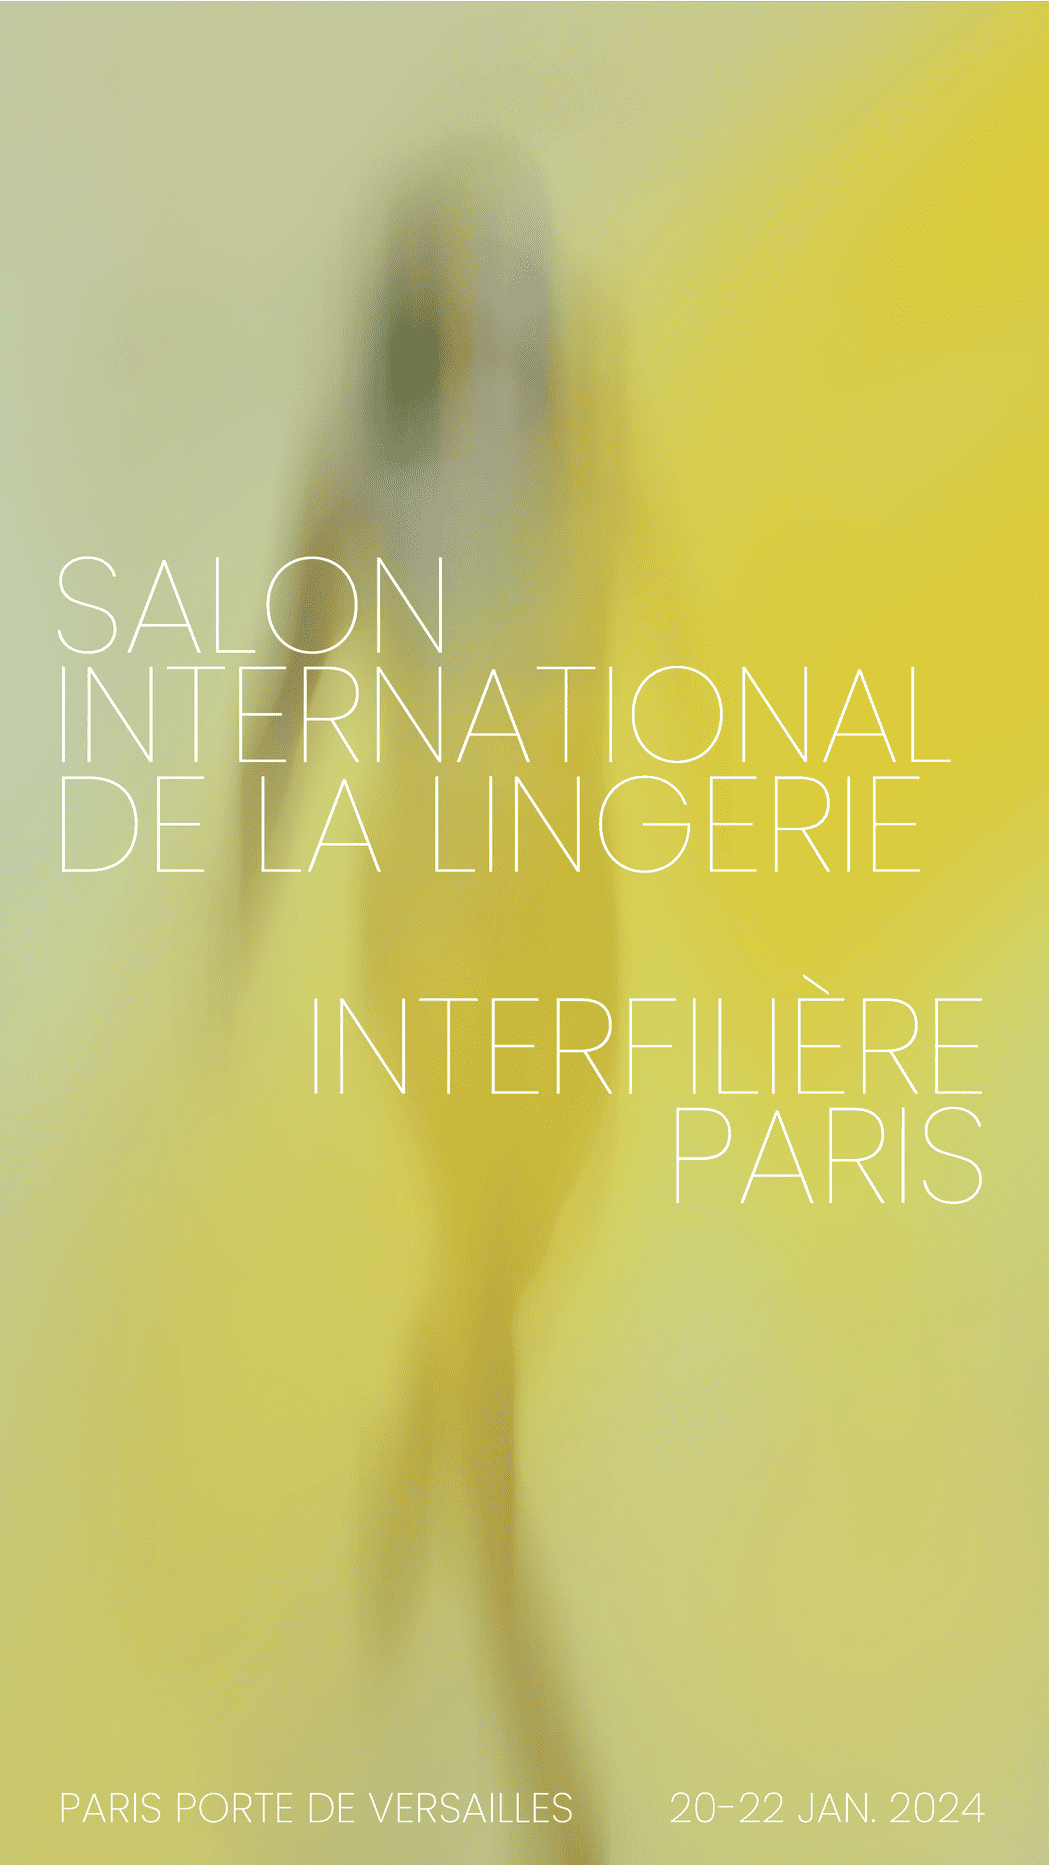 60° edizione del Salon International de la lingerie